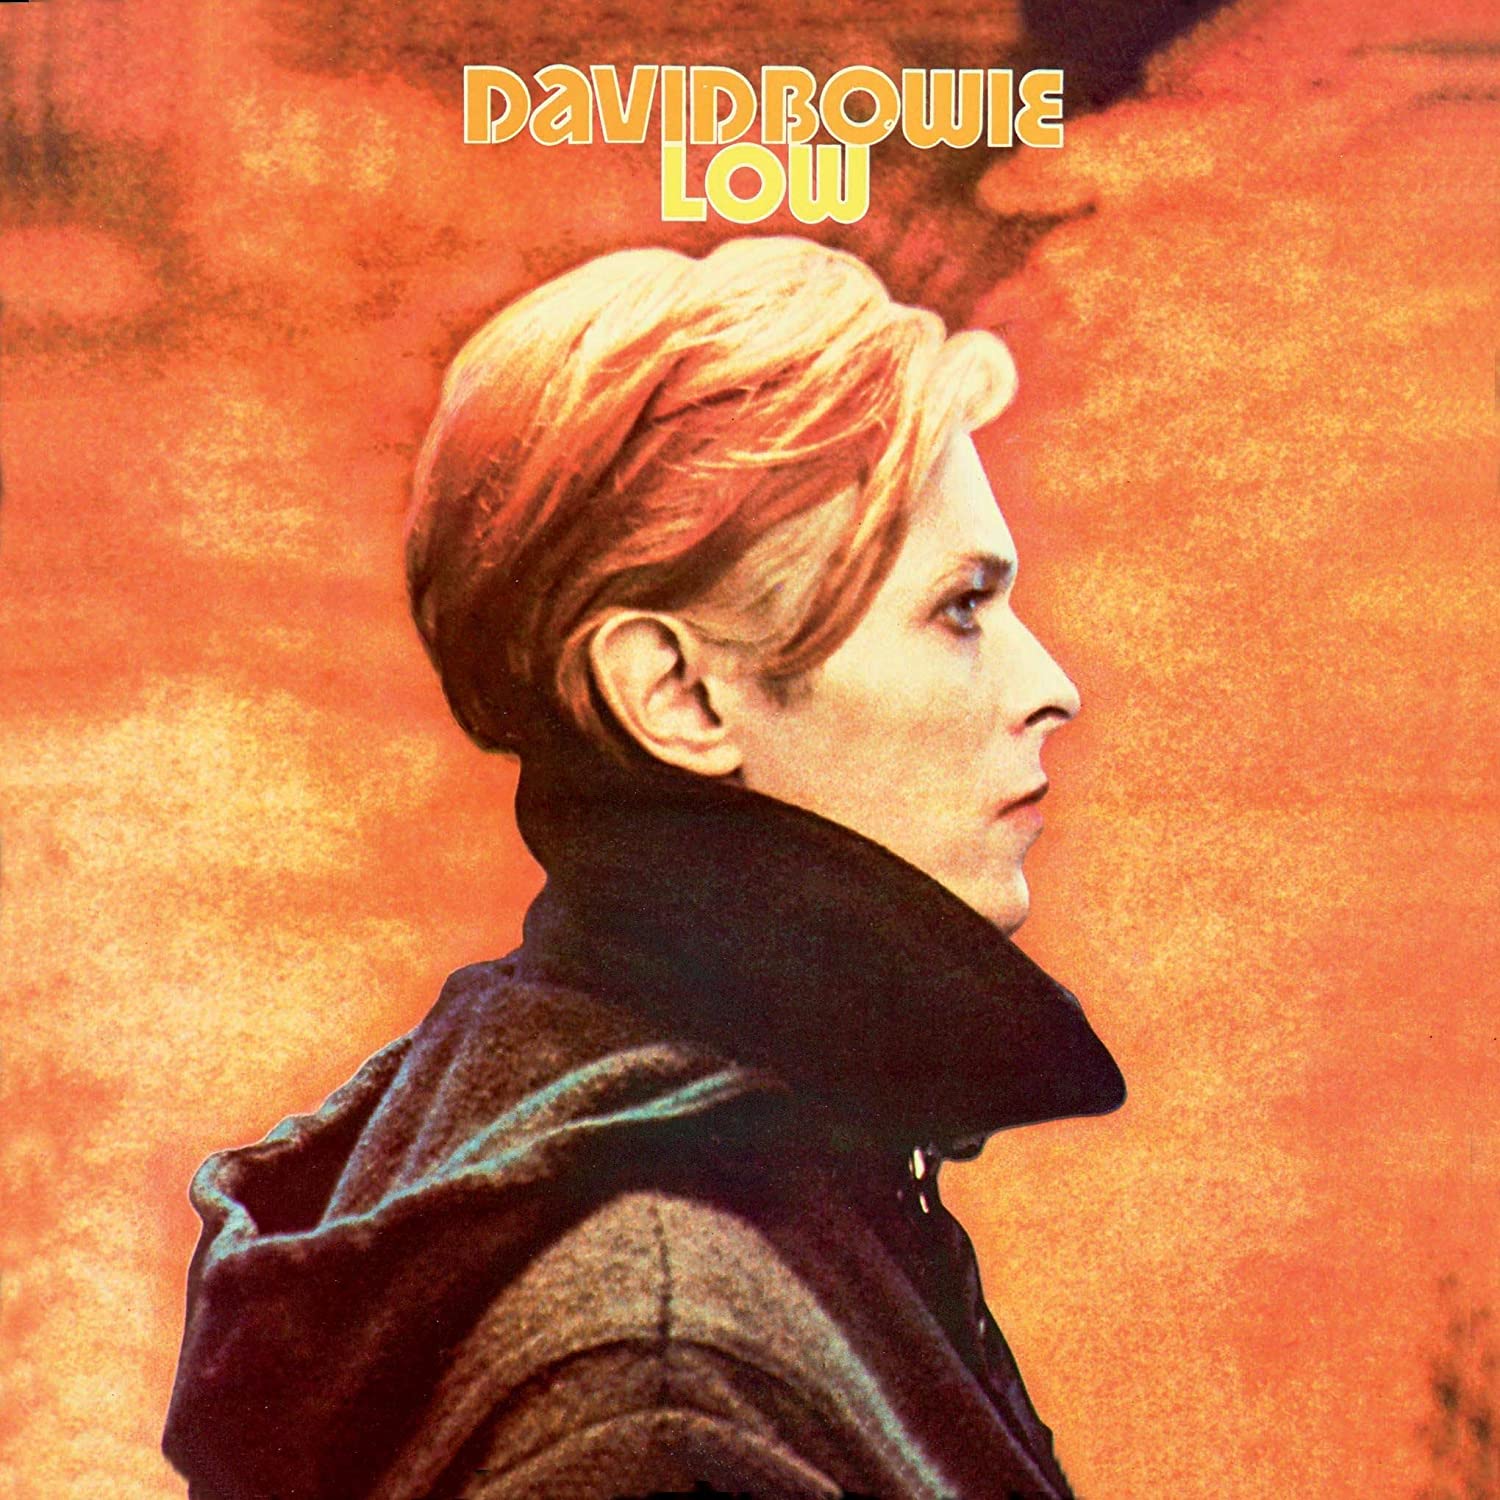 Alla David Bowies låtar rankade från sämst till bäst – plats 62-48